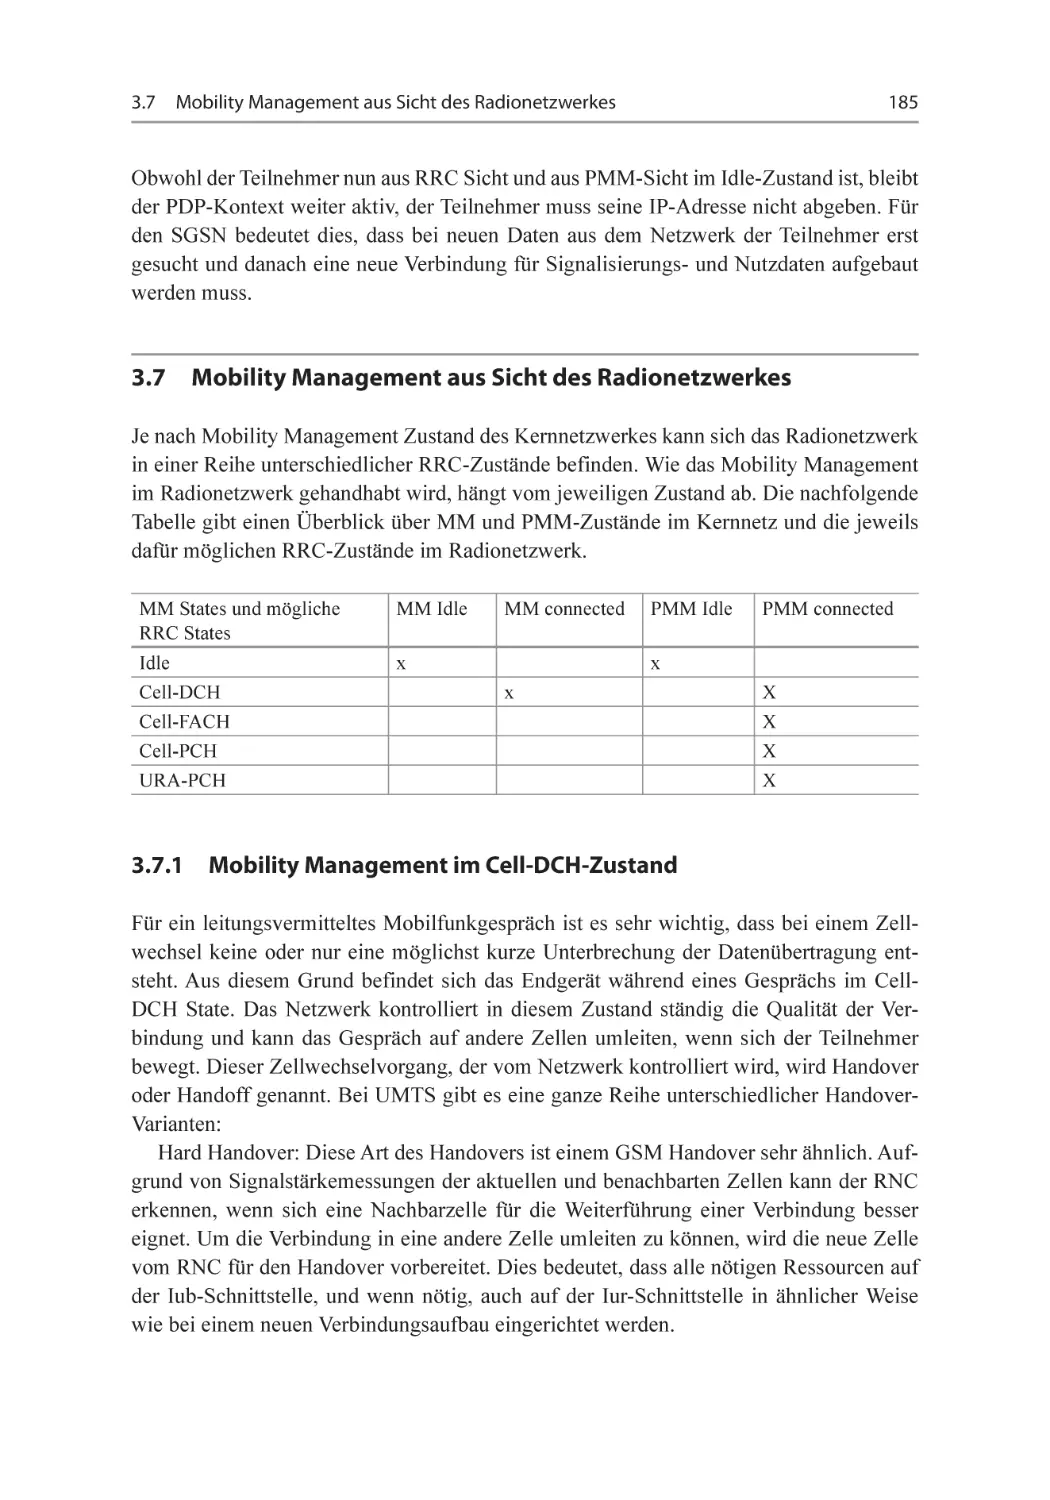 3.7 Mobility Management aus Sicht des Radionetzwerkes
3.7.1 Mobility Management im Cell-DCH-Zustand